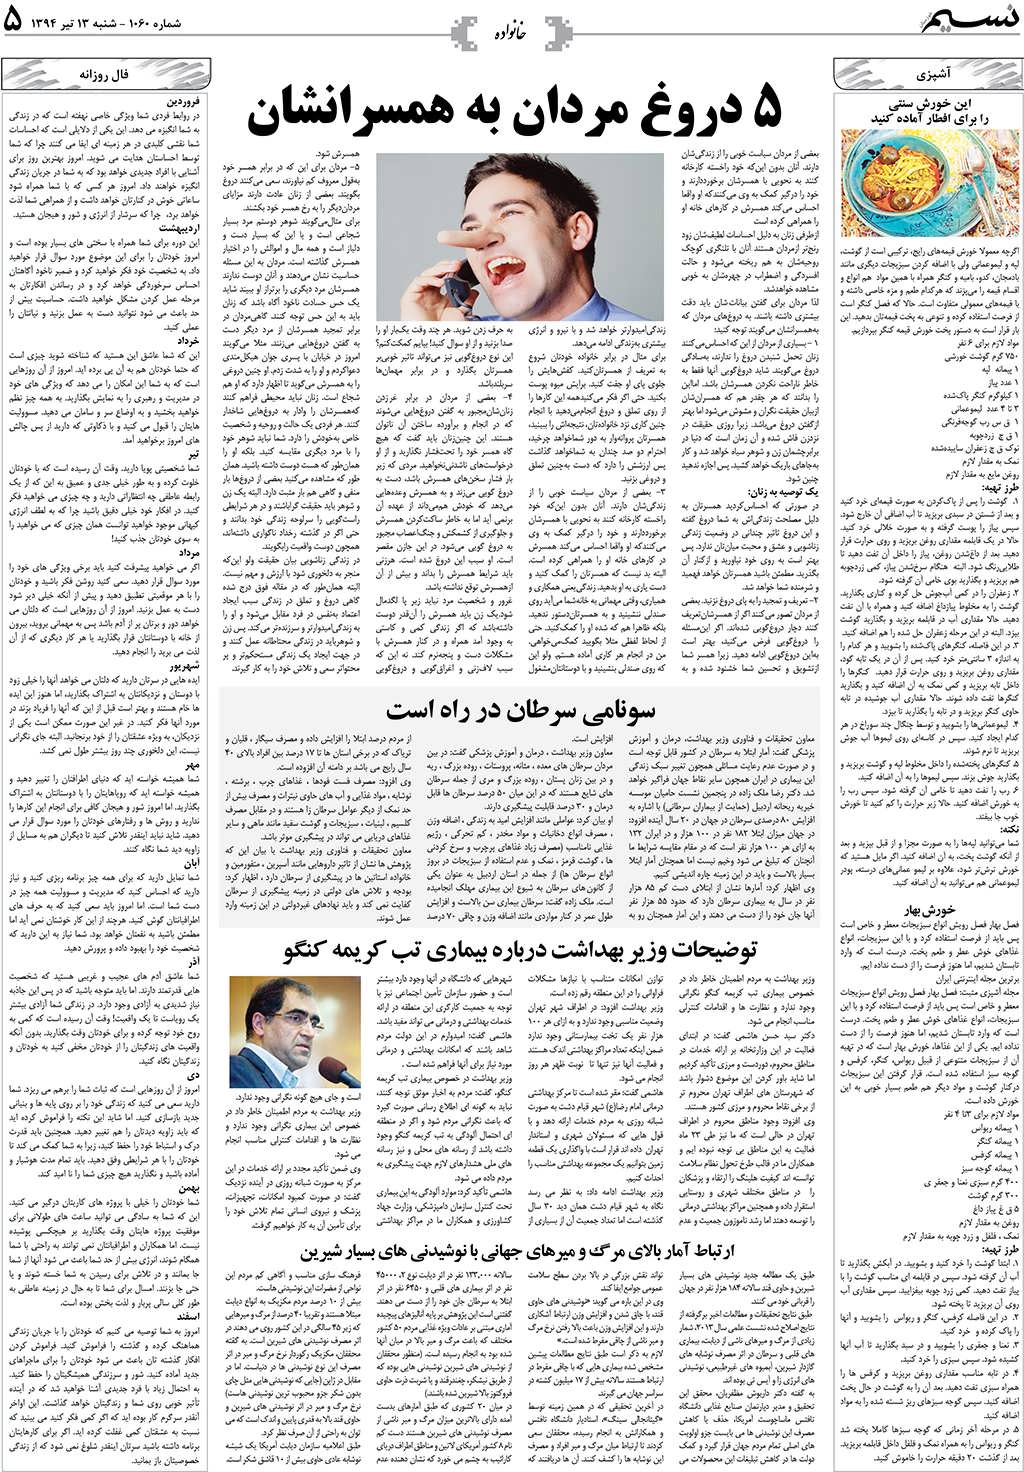 صفحه خانواده روزنامه نسیم شماره 1060